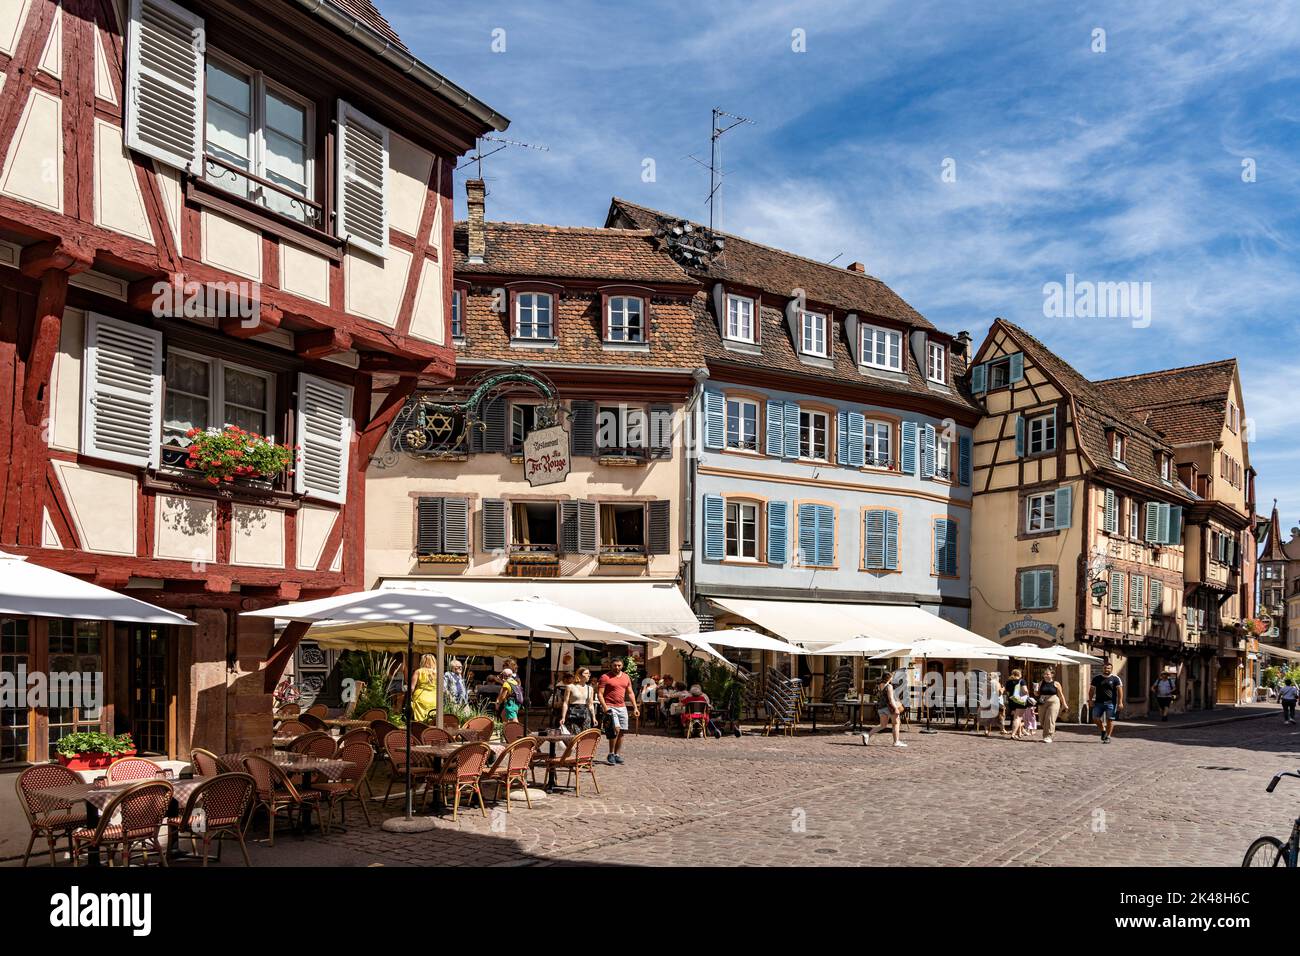 Fachwerkhäuser in der Altstadt von Colmar, Elsass, Frankreich | Casas de entramado de madera en el casco antiguo de Colmar, Alsacia, Francia Foto de stock